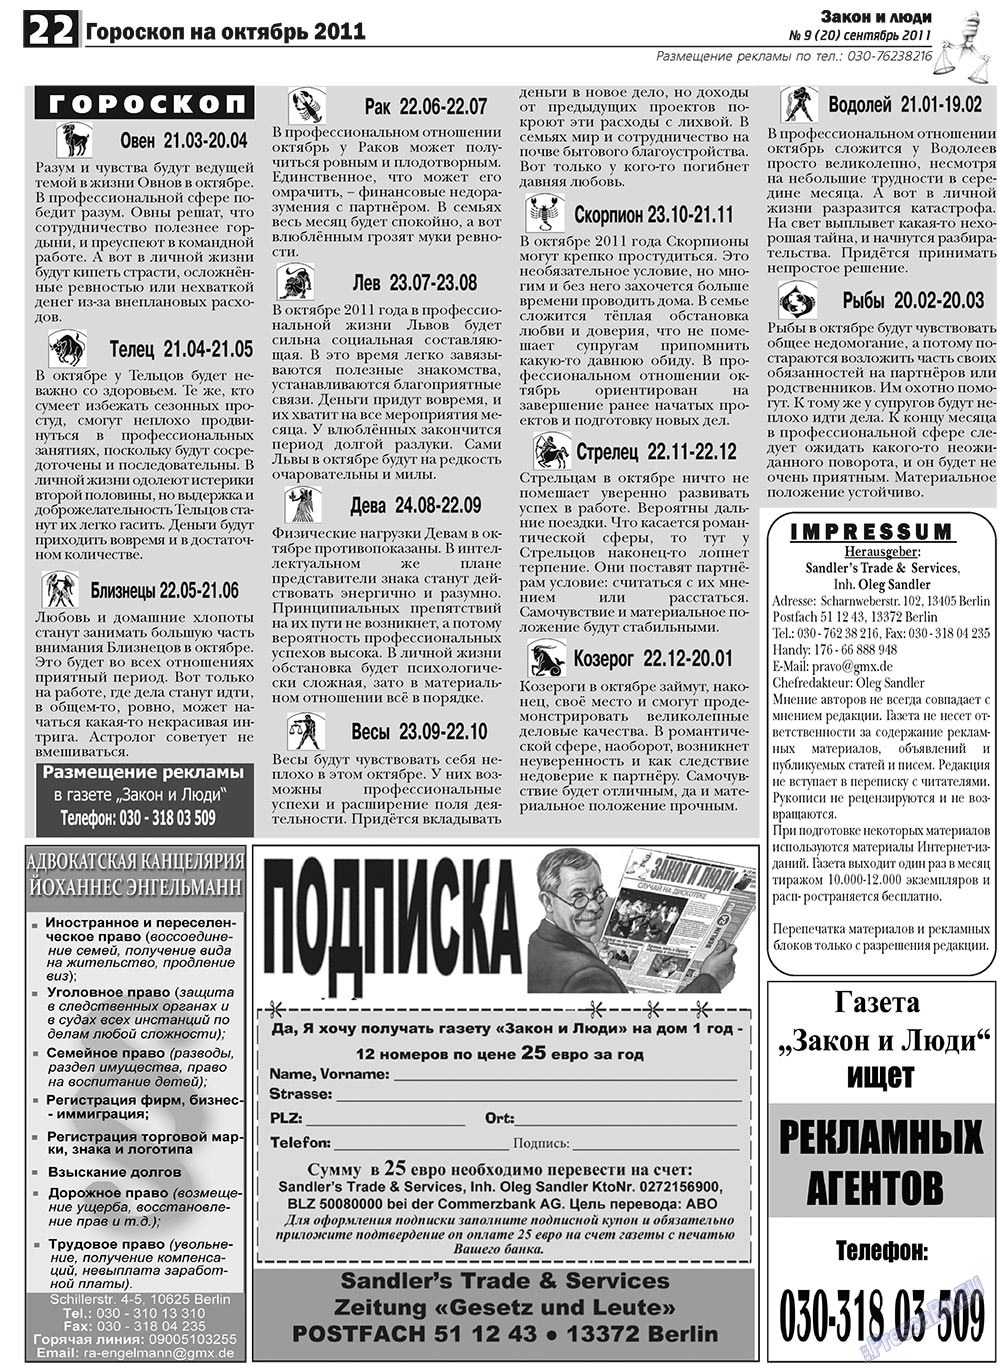 Закон и люди, газета. 2011 №9 стр.22